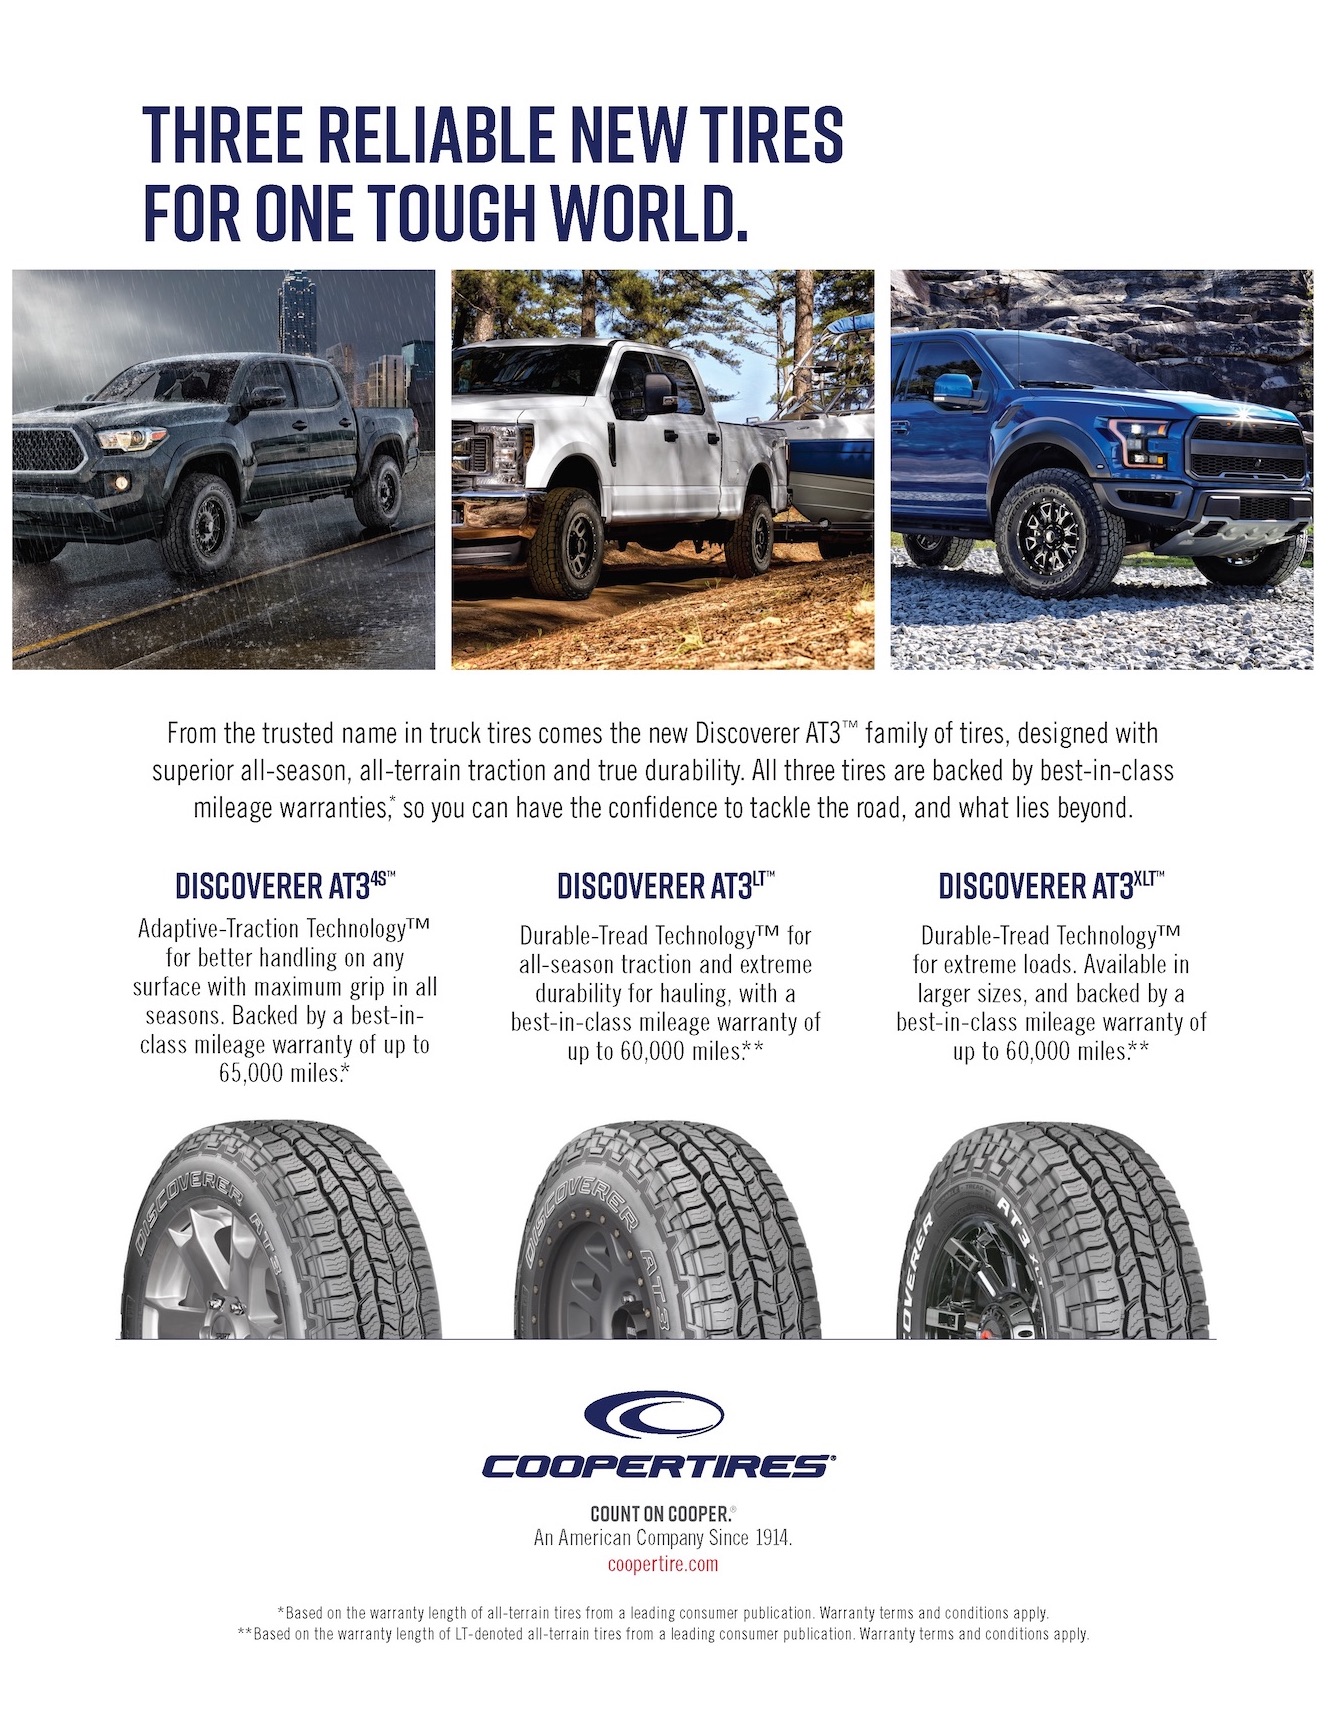 Cooper Tires for Toyota Trucks